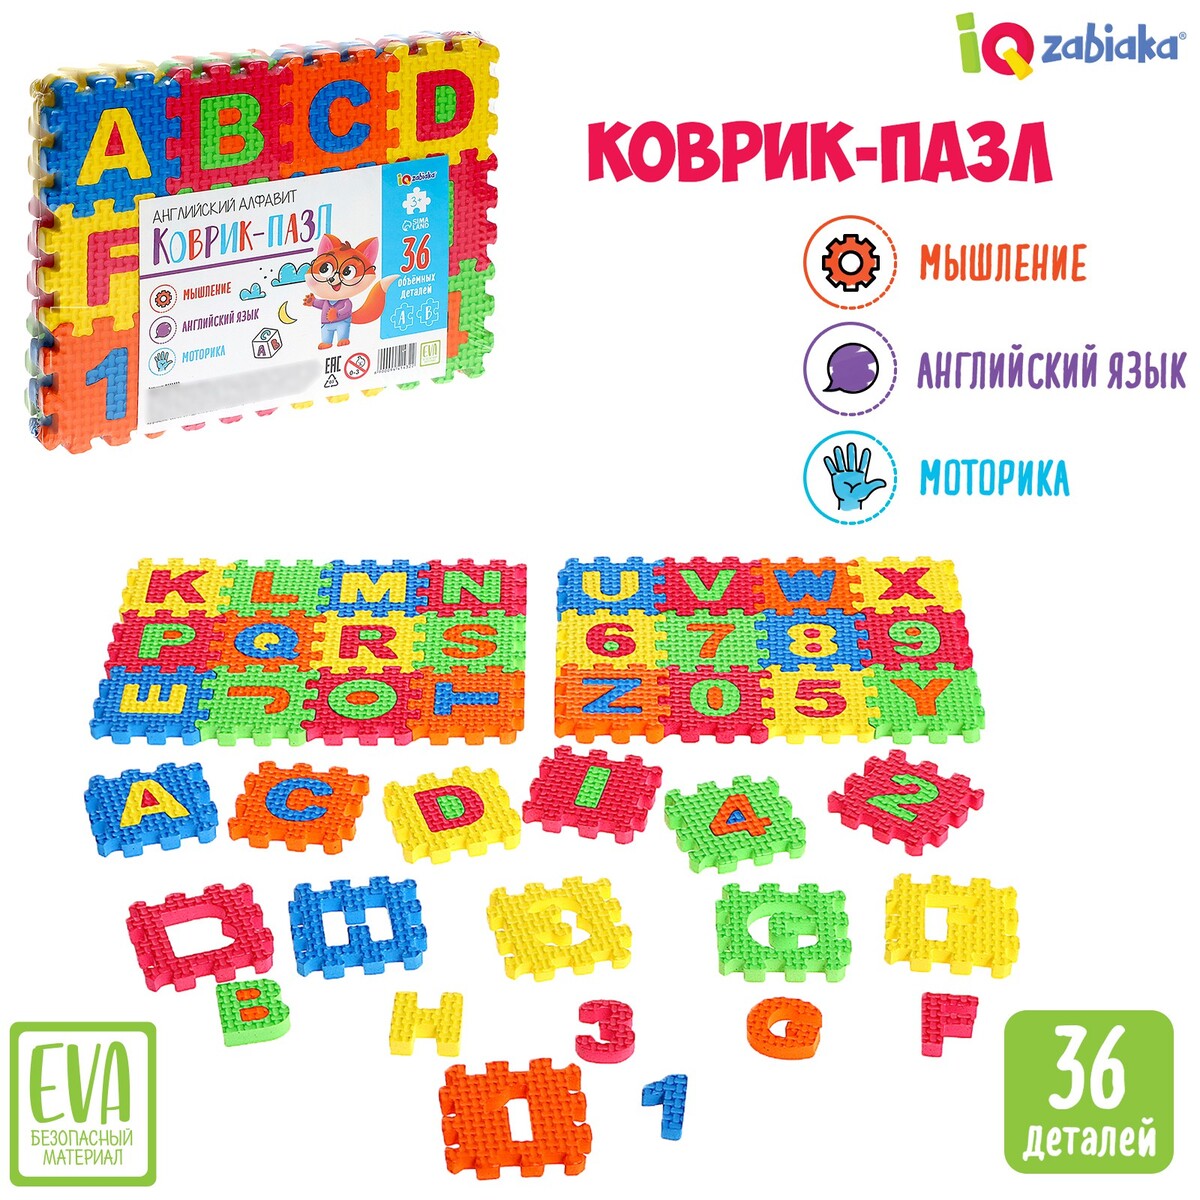 Коврик-пазл игровой коврик экопромторг мягкий пол развивающий буквы и цифры 48 деталей 10x10 см